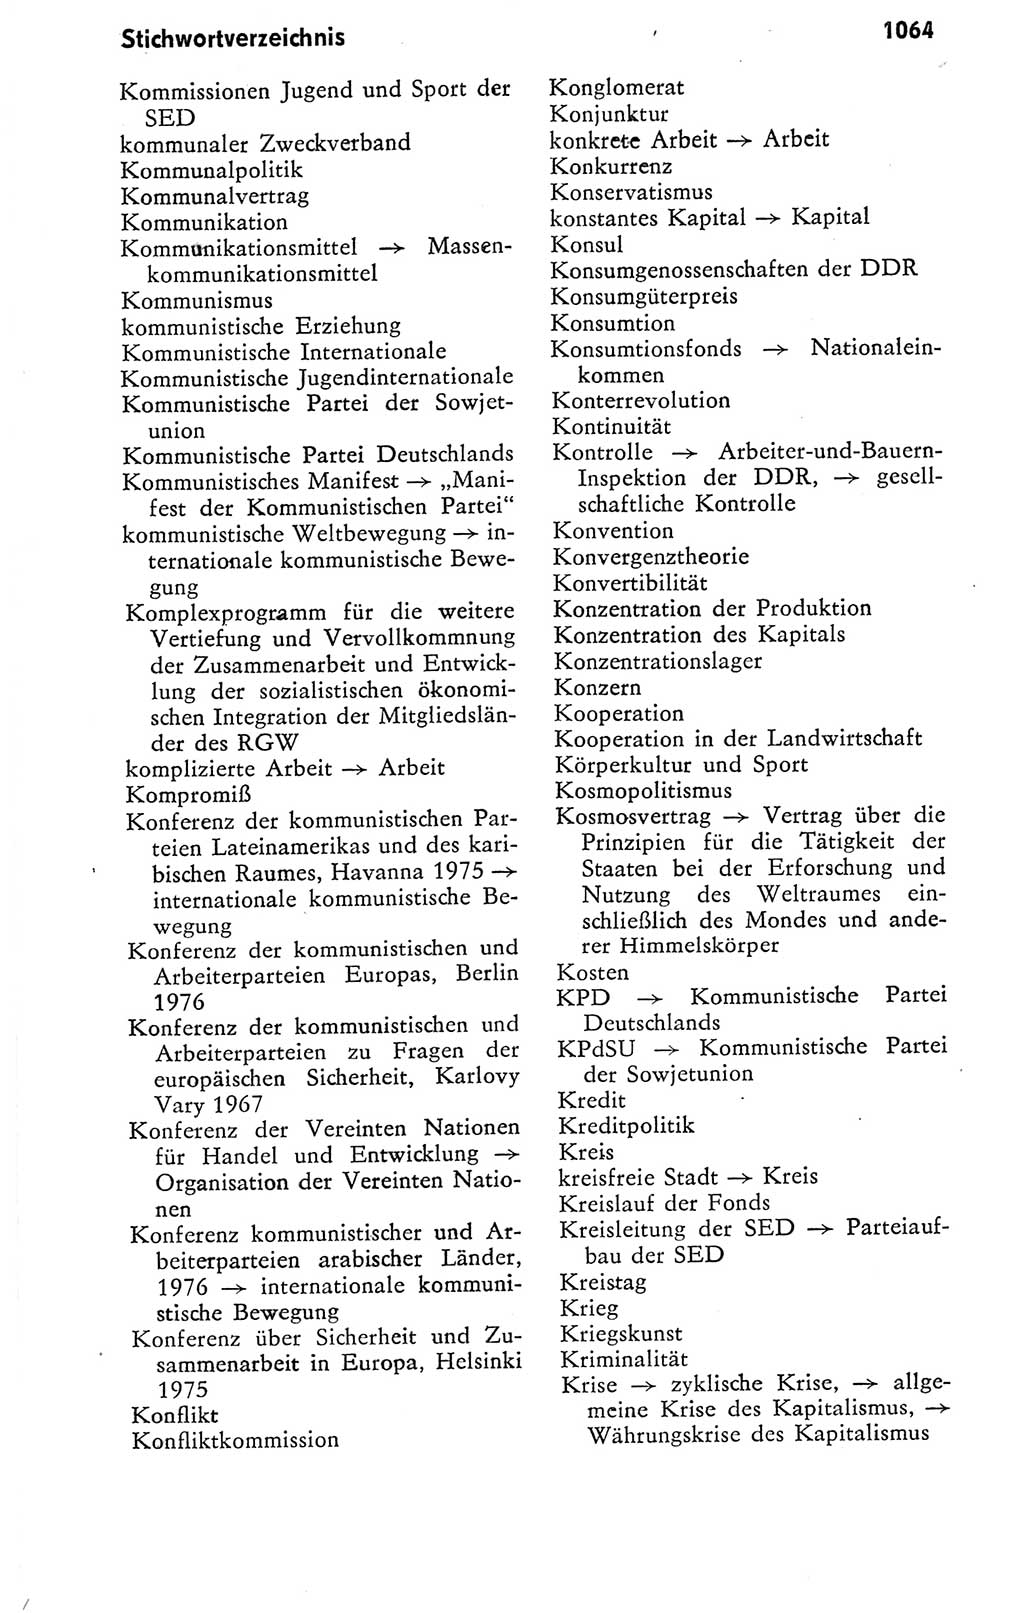 Kleines politisches Wörterbuch [Deutsche Demokratische Republik (DDR)] 1978, Seite 1064 (Kl. pol. Wb. DDR 1978, S. 1064)